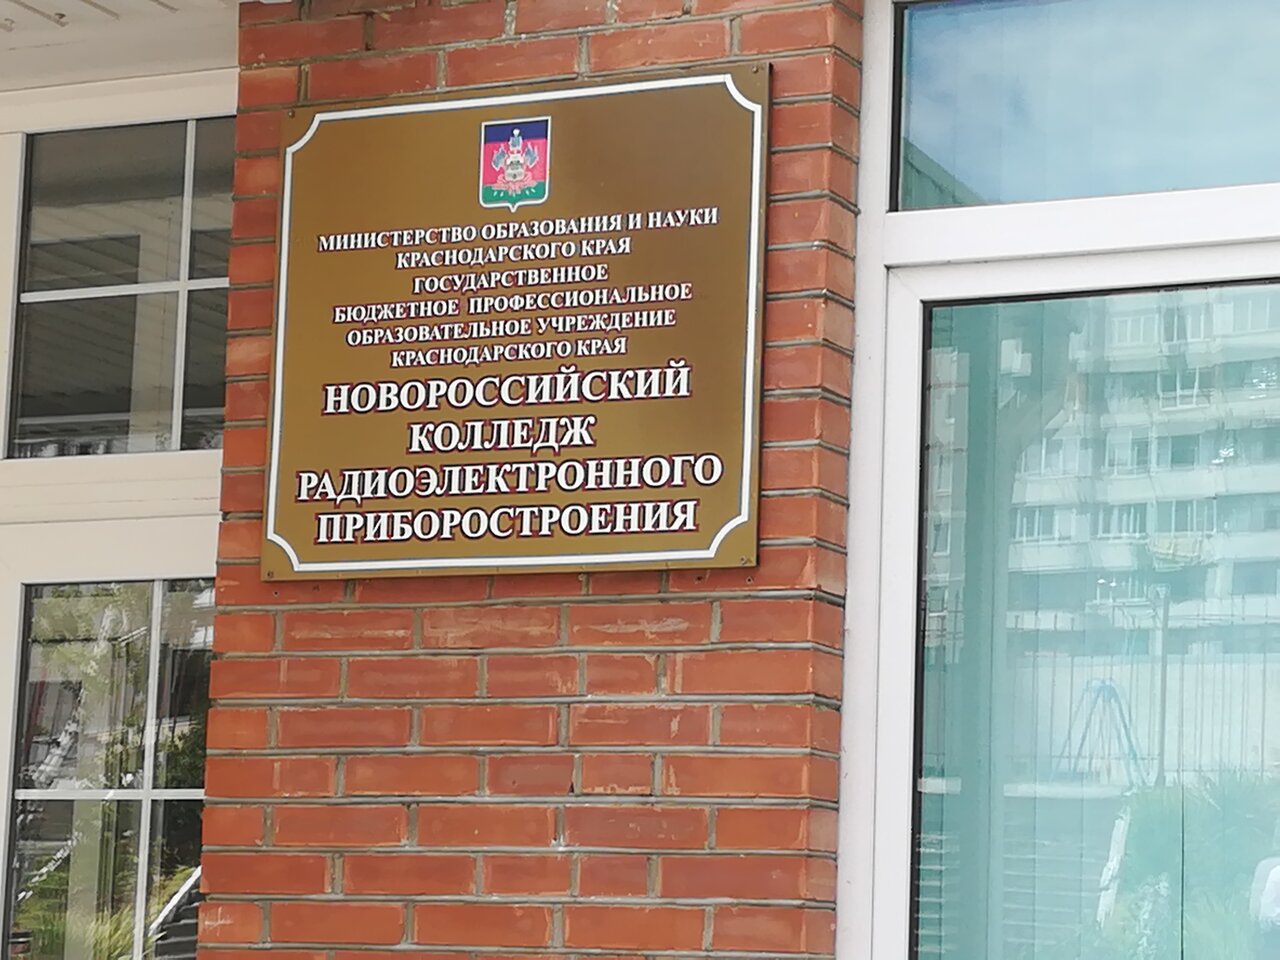 Новороссийский колледж радиоэлектронного приборостроения